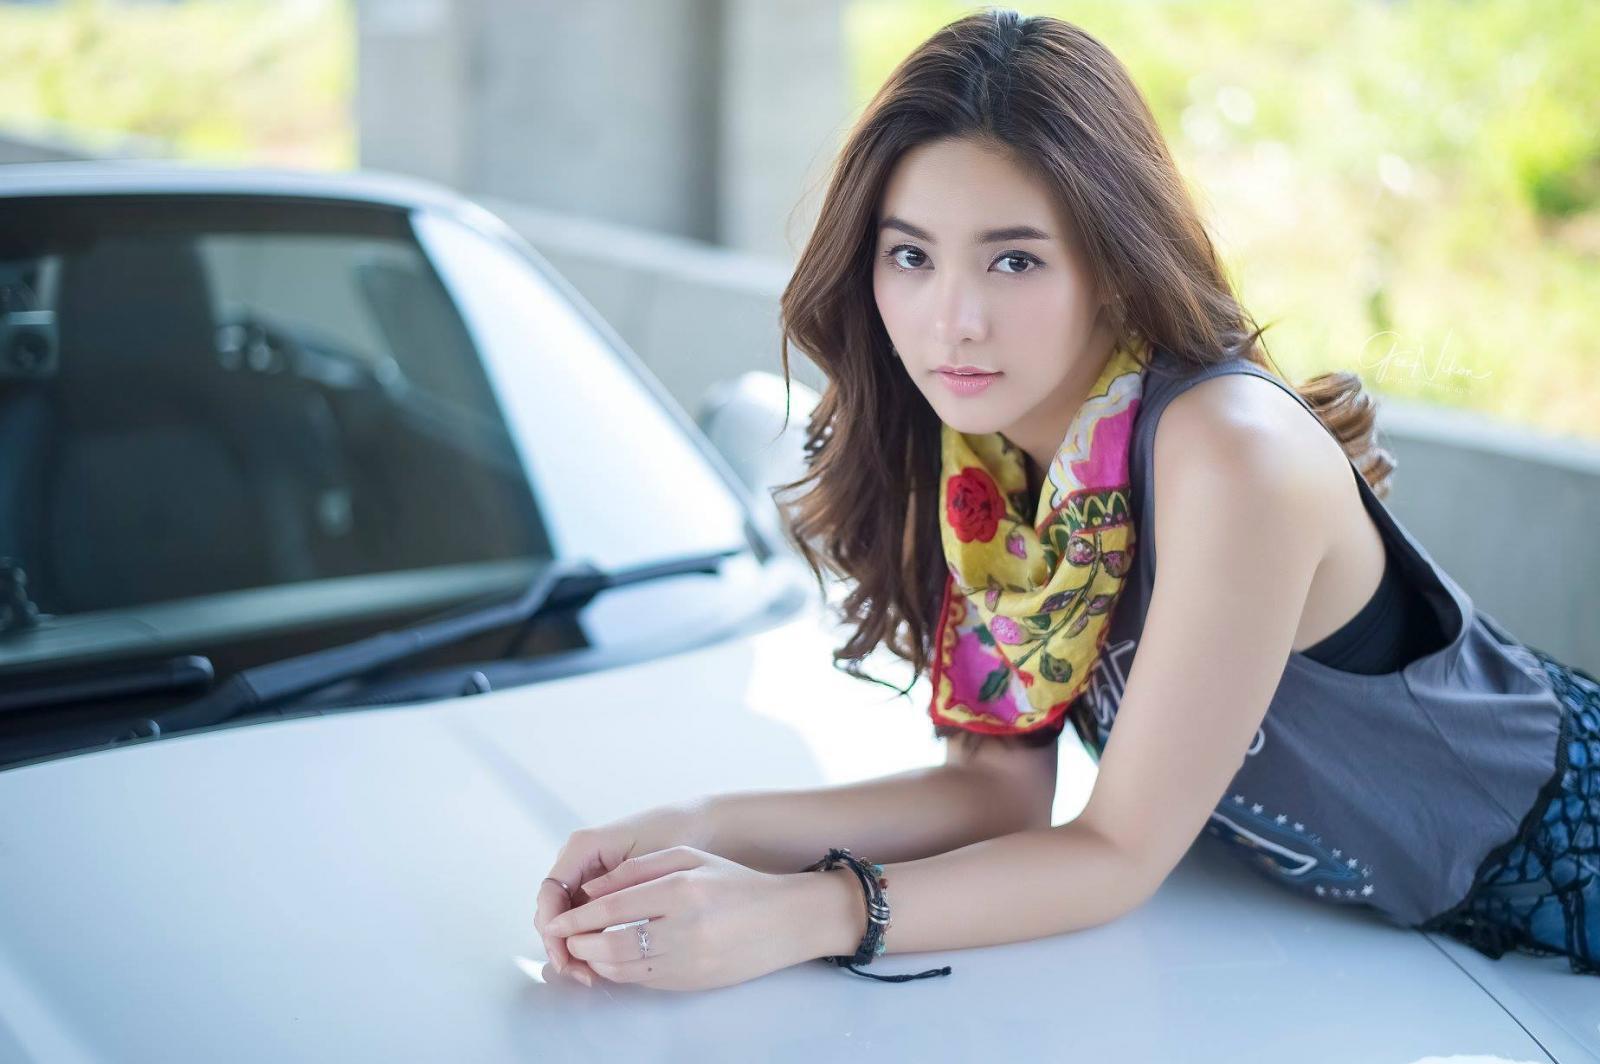 Tim đập loạn nhịp trước người đẹp Thái Lan bên Mazda mui trần